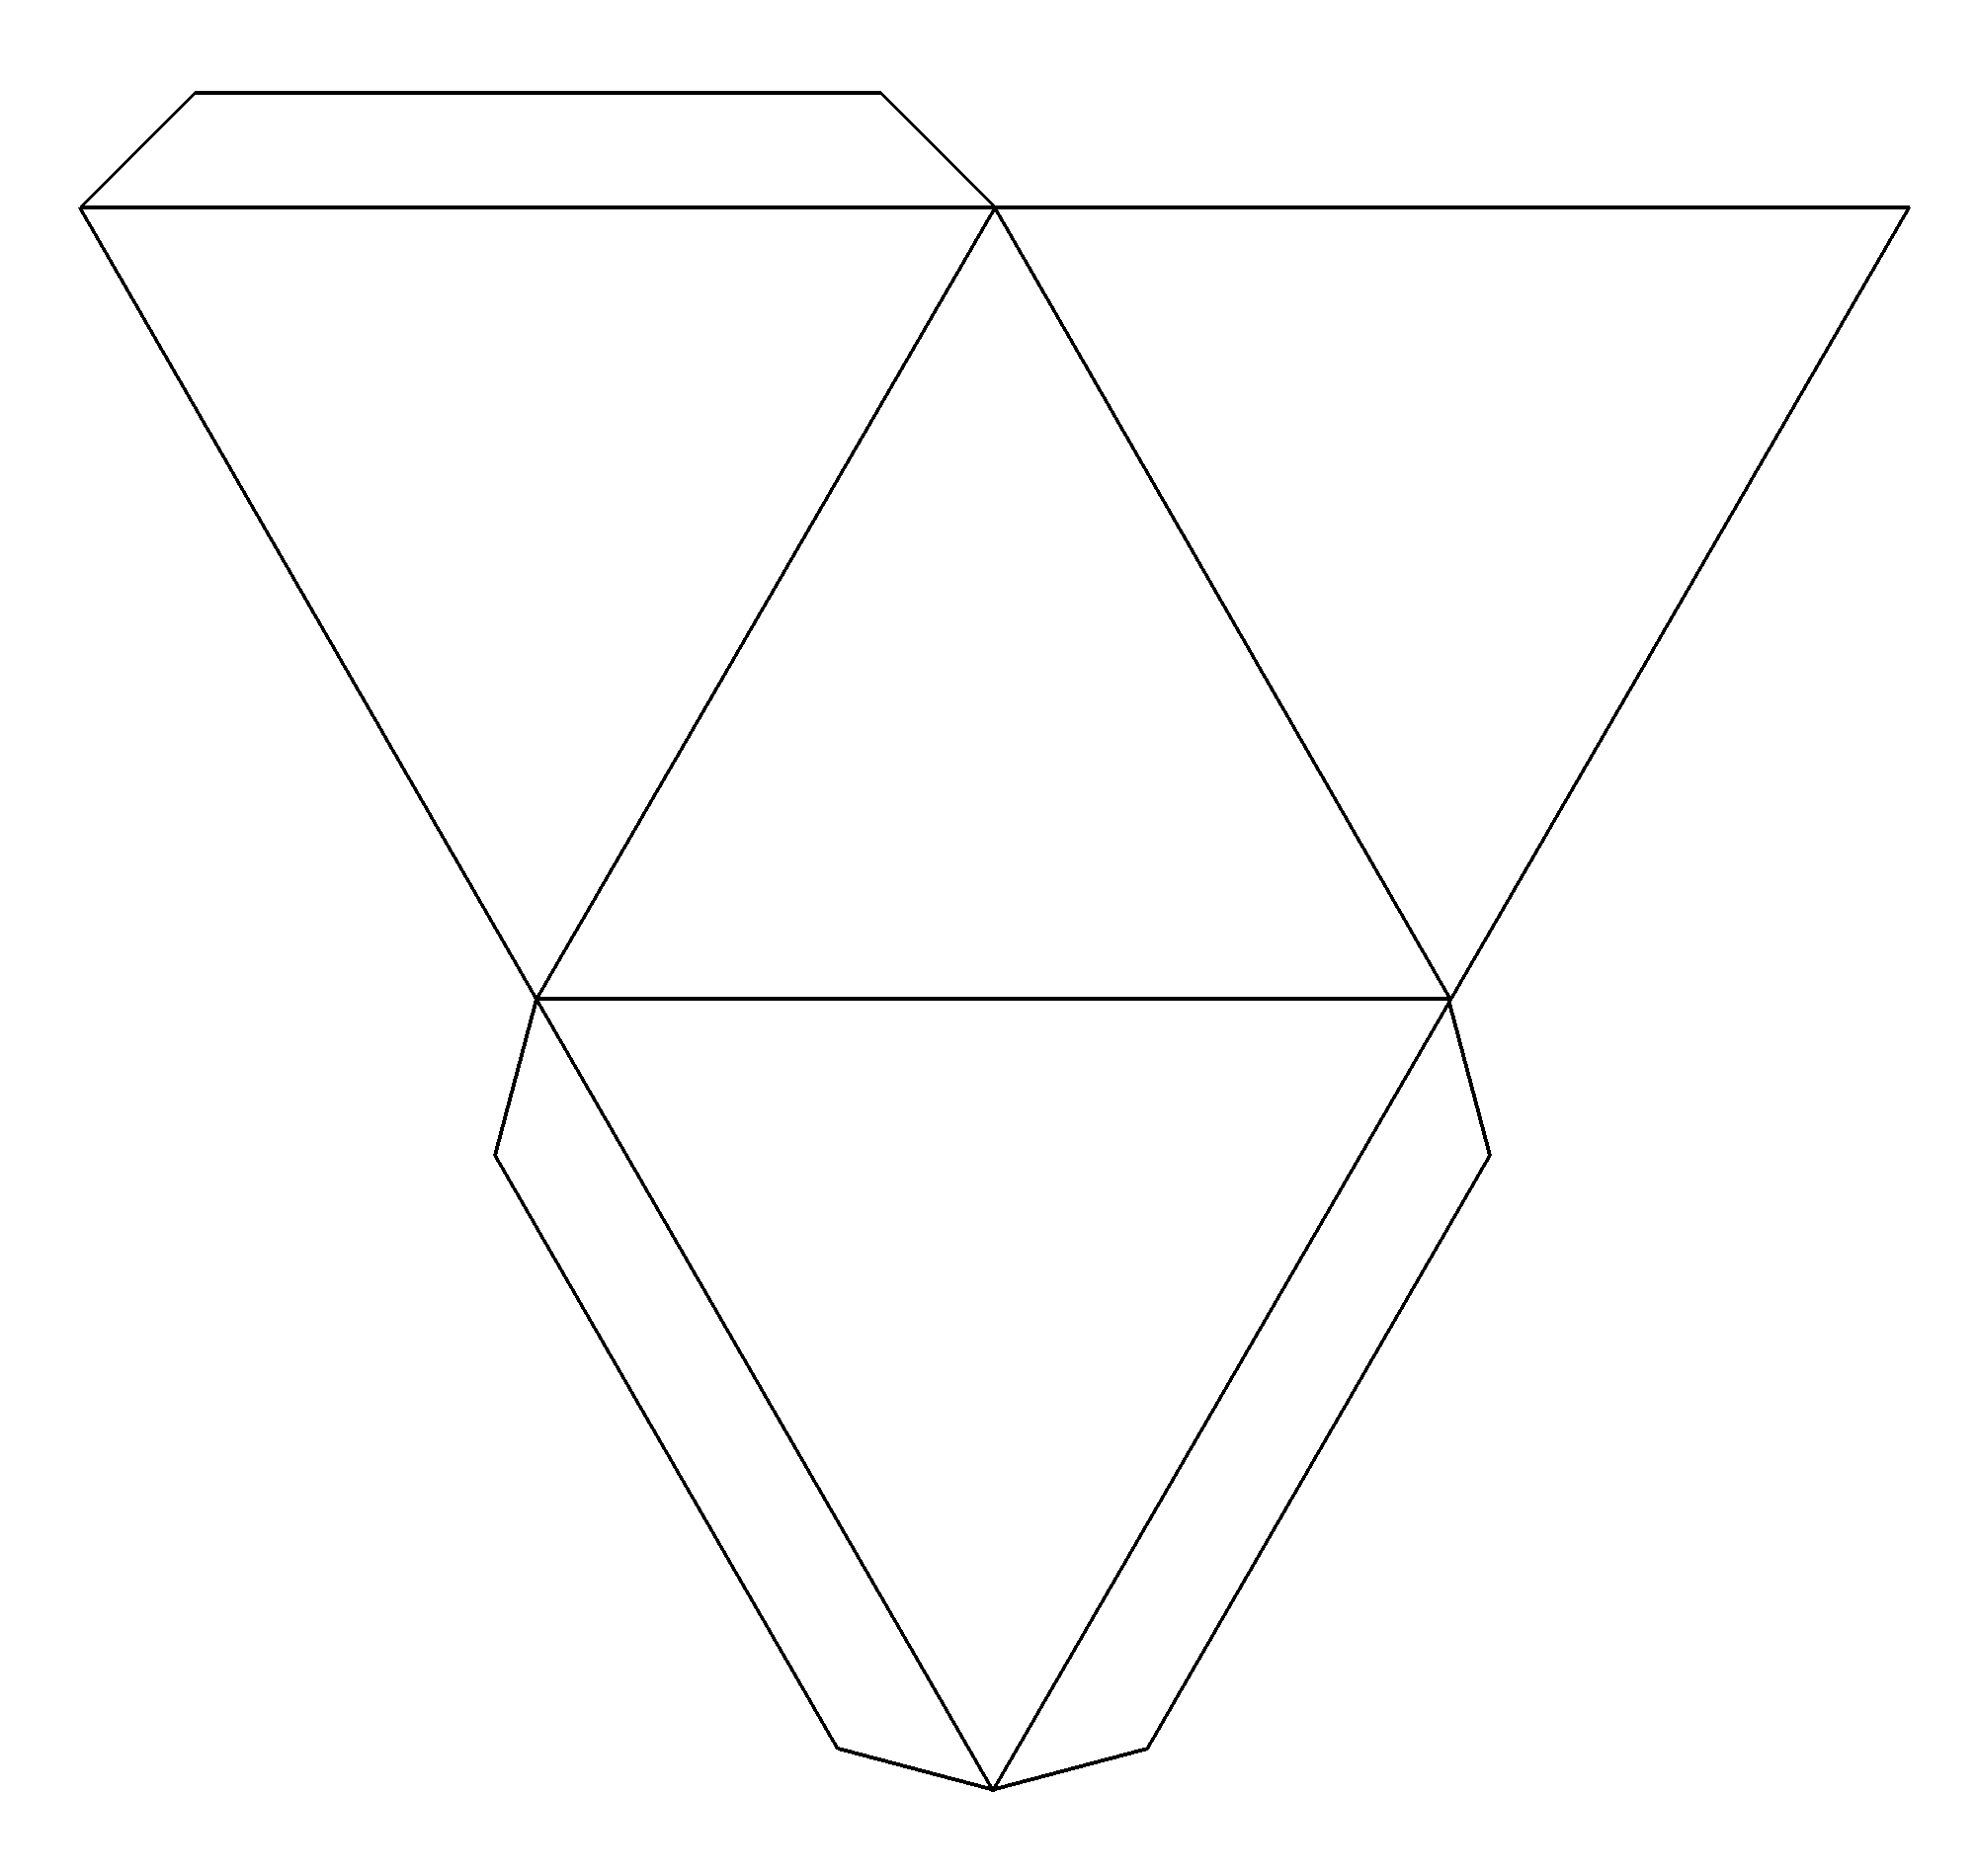 Геометрические фигуры из бумаги объемные схемы: Объемные фигуры из бумаги, схемы. Как сделать объемные геометрические фигуры